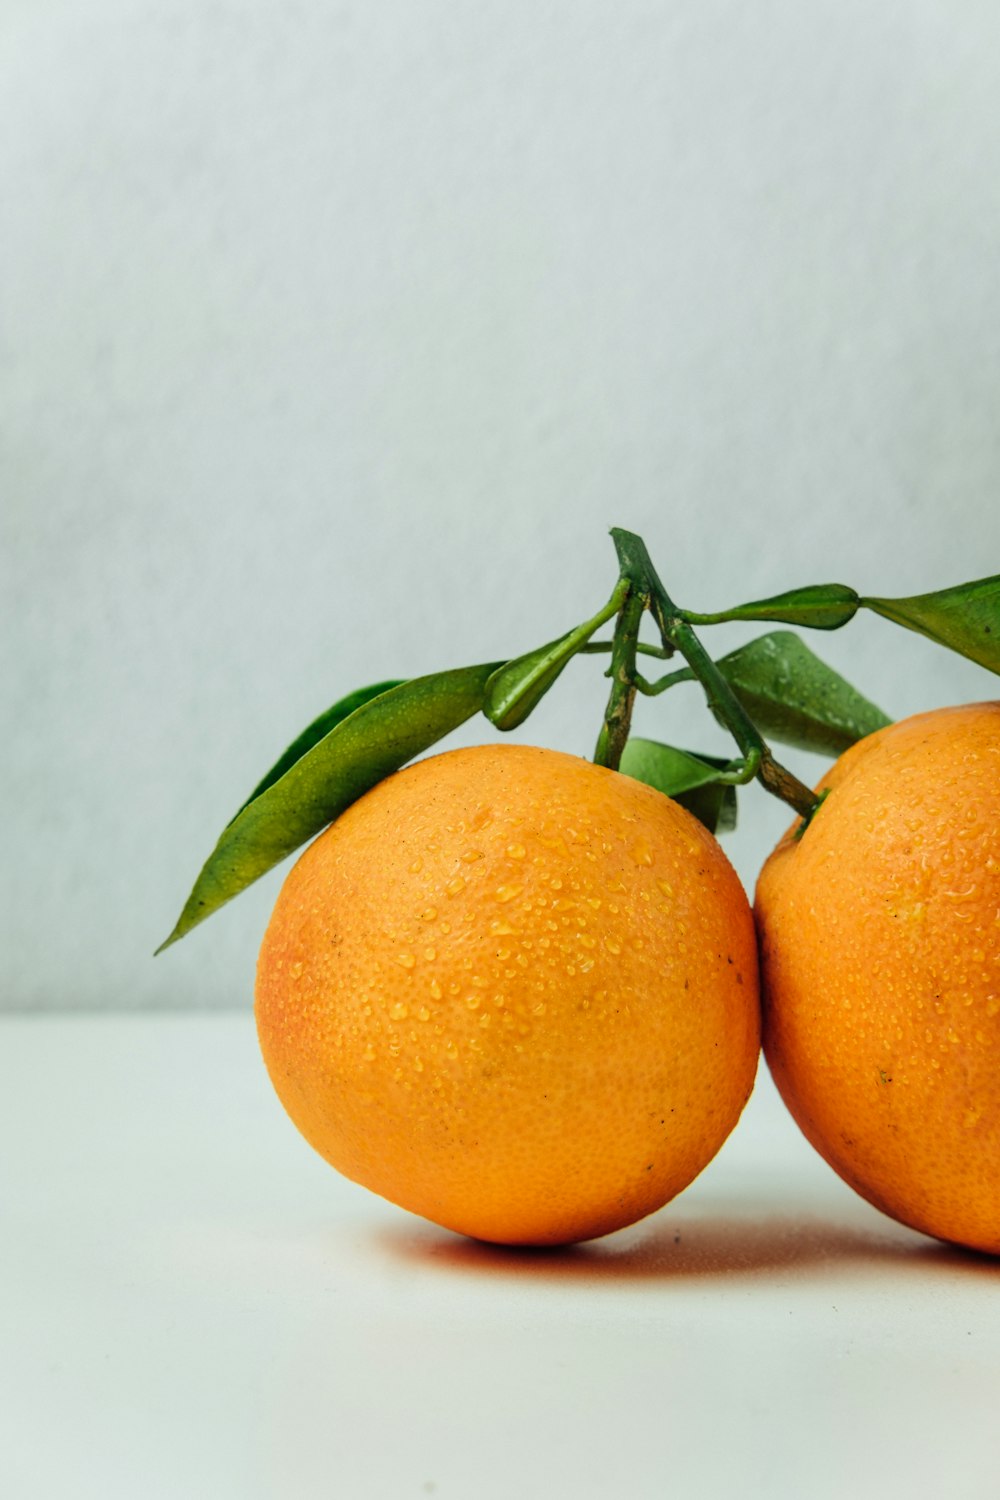 테이블 위의 오렌지 과일 2개